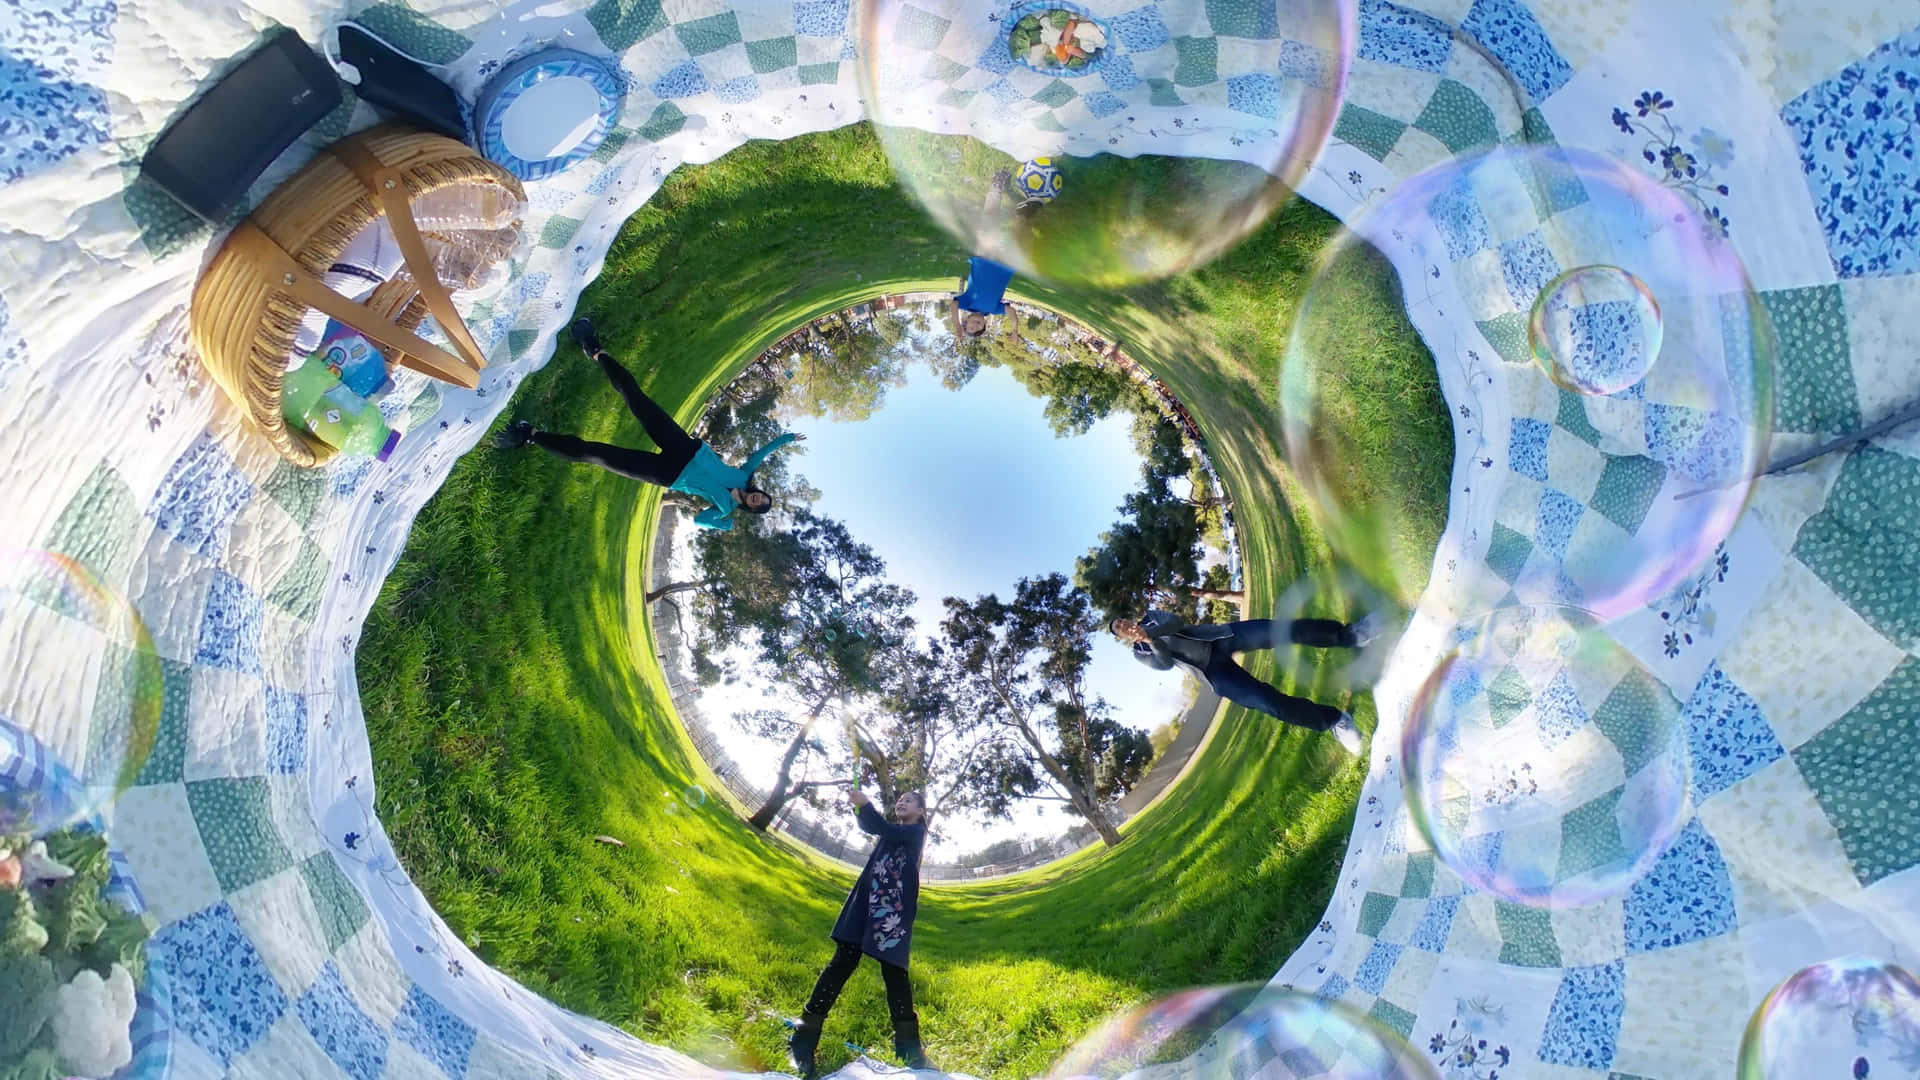 Imagende Burbujas En Un Picnic En 360 Grados.